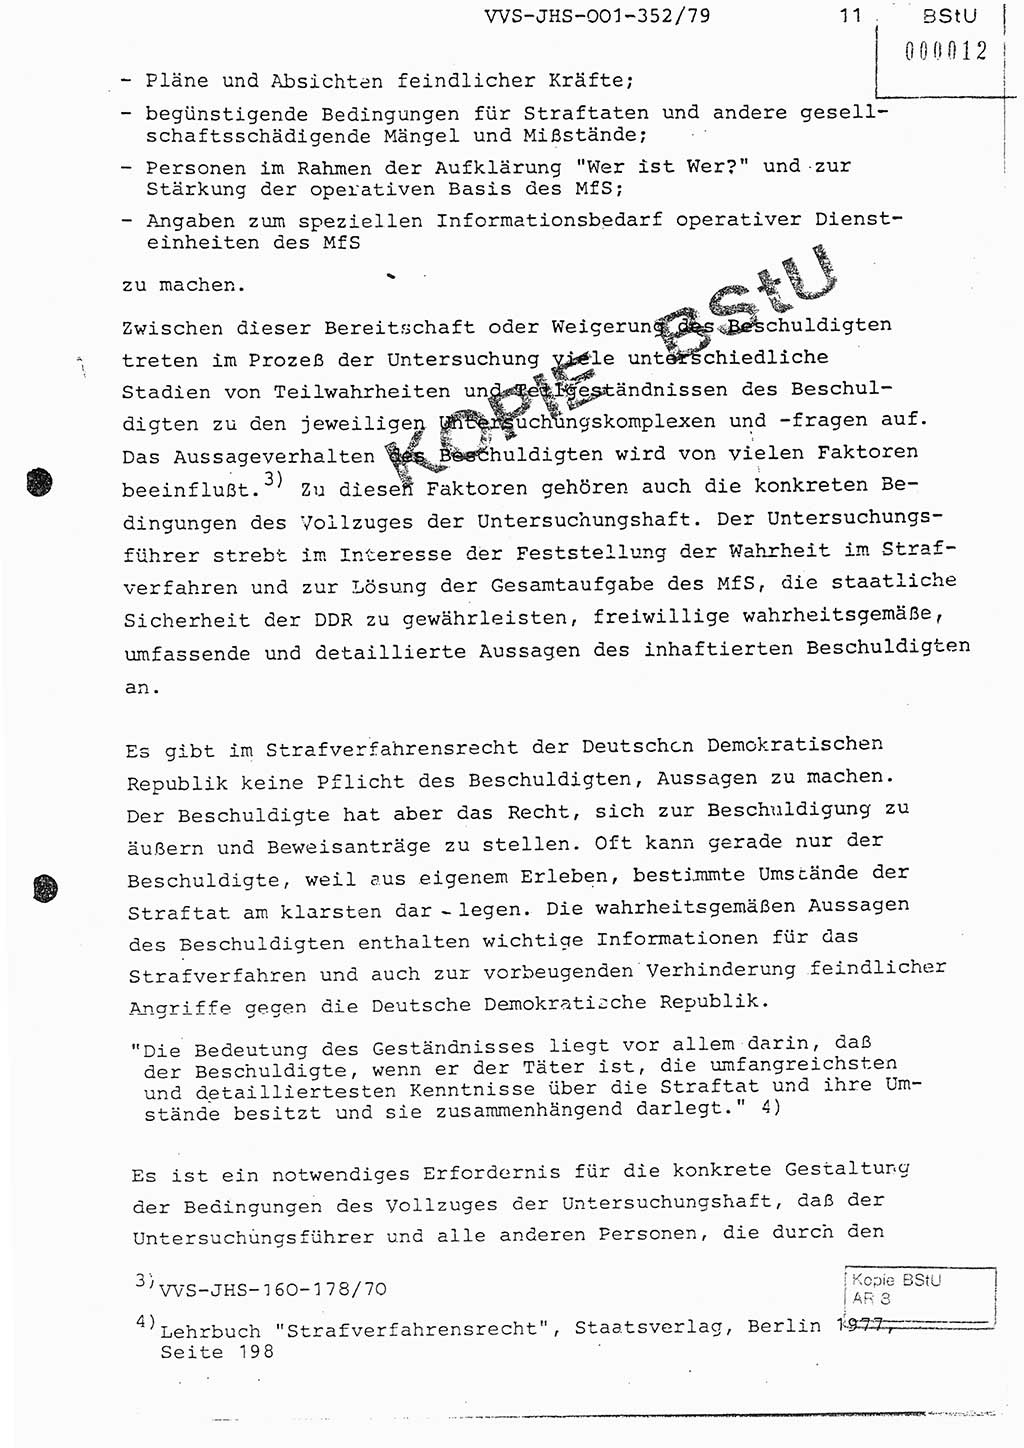 Diplomarbeit Hauptmann Peter Wittum (BV Bln. Abt. HA Ⅸ), Ministerium für Staatssicherheit (MfS) [Deutsche Demokratische Republik (DDR)], Juristische Hochschule (JHS), Vertrauliche Verschlußsache (VVS) o001-352/79, Potsdam 1979, Seite 11 (Dipl.-Arb. MfS DDR JHS VVS o001-352/79 1979, S. 11)